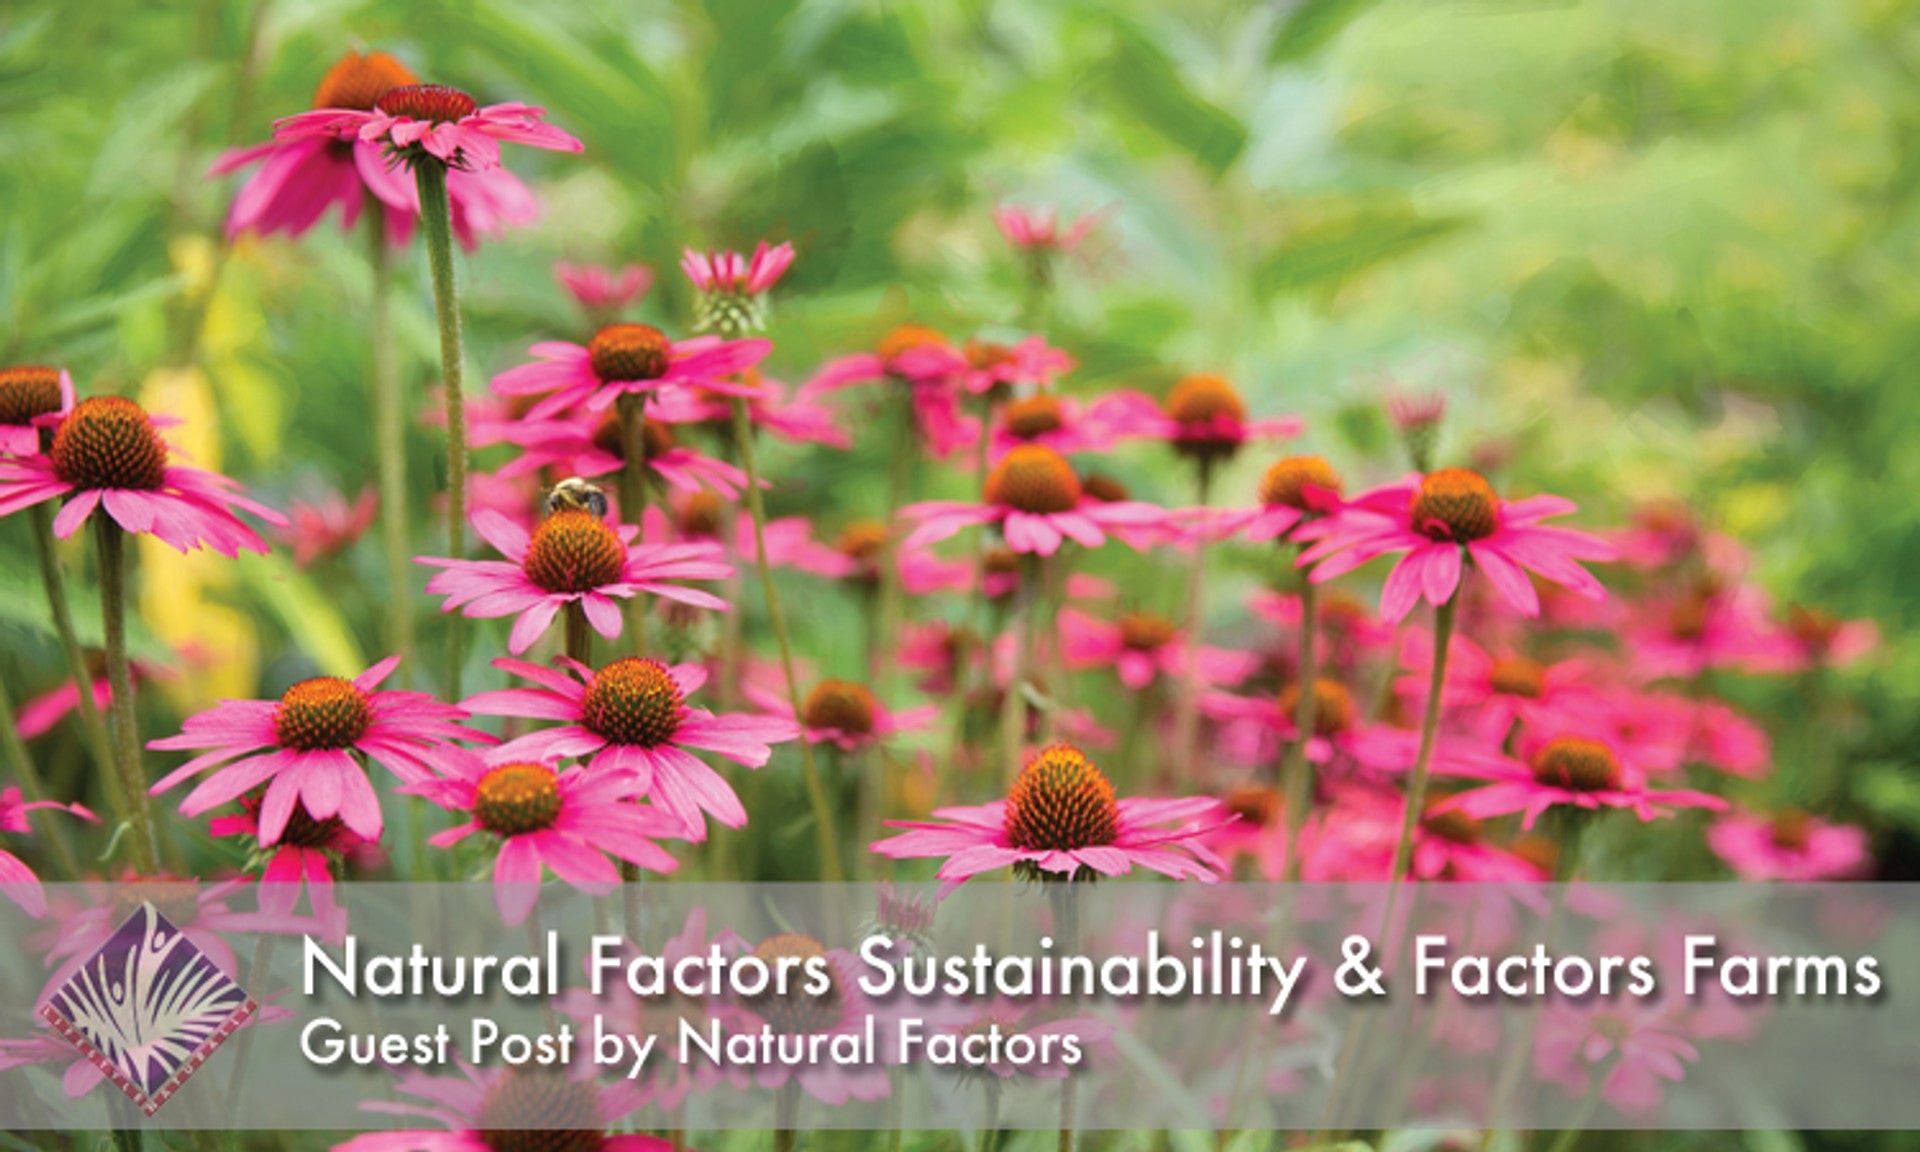 Natural Factors Sustainability & Factors Farms